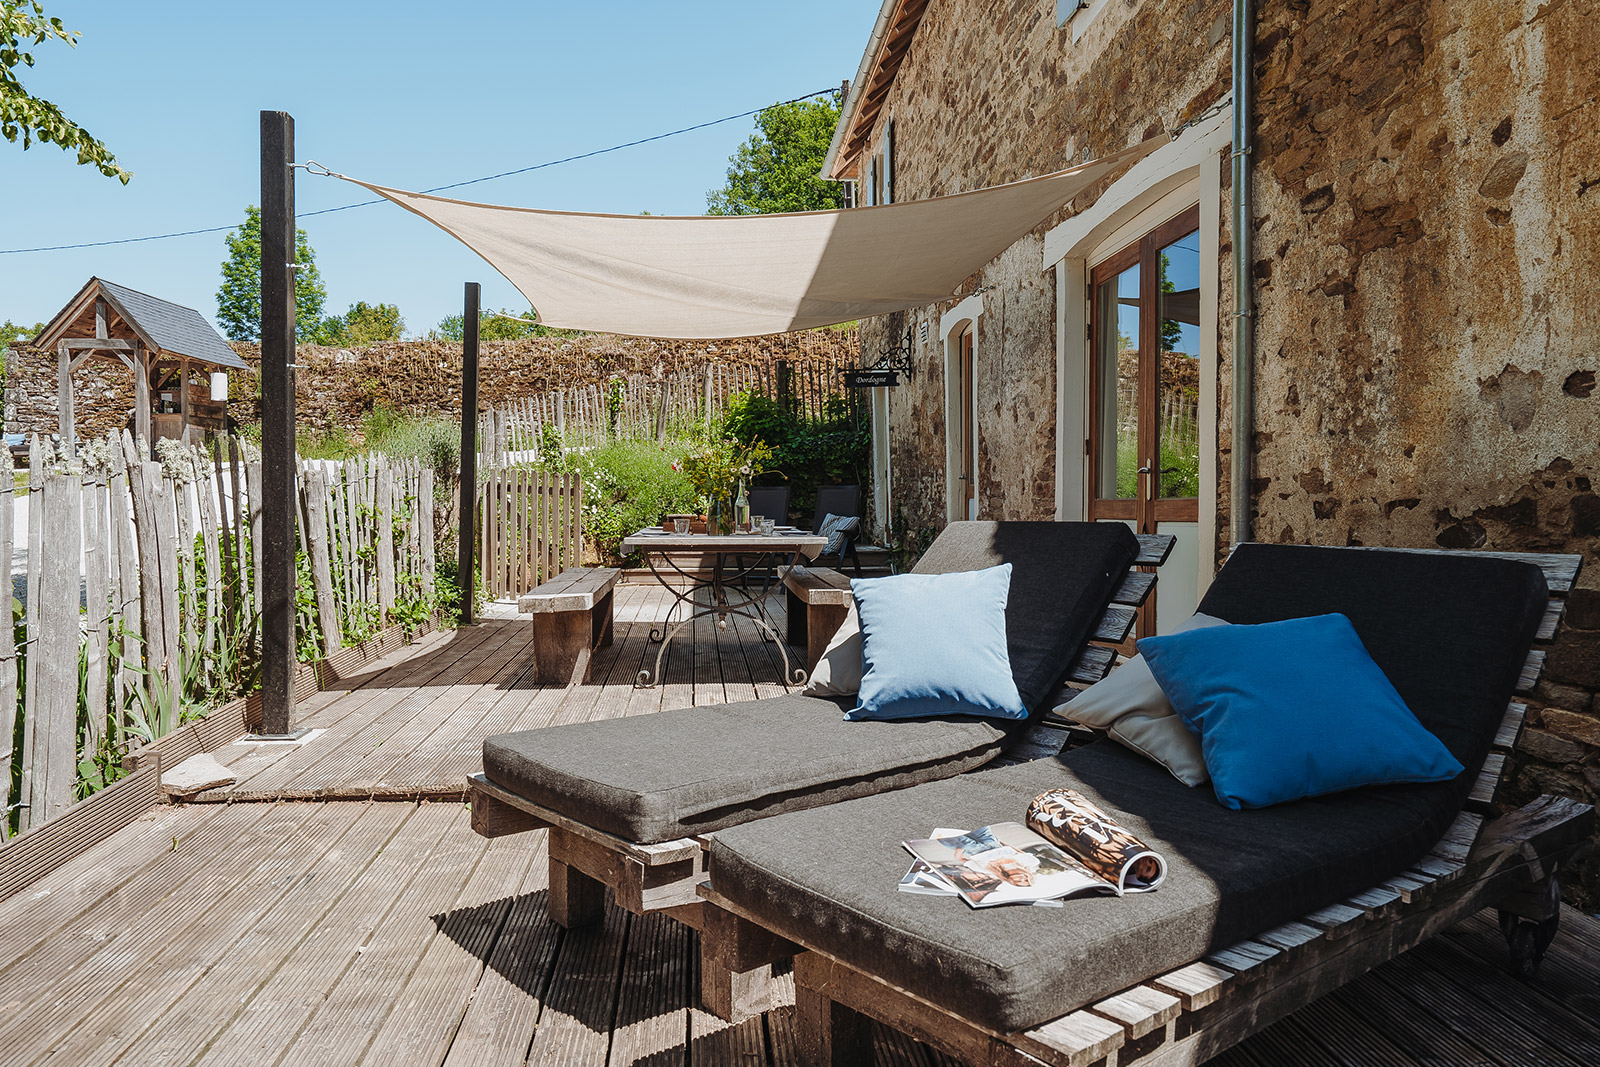 Terras vakantiehuis LOTT Coussac-Bonneval met eettafel stoelen en lounge zonnebedden op vakantiedomein Frankrijk